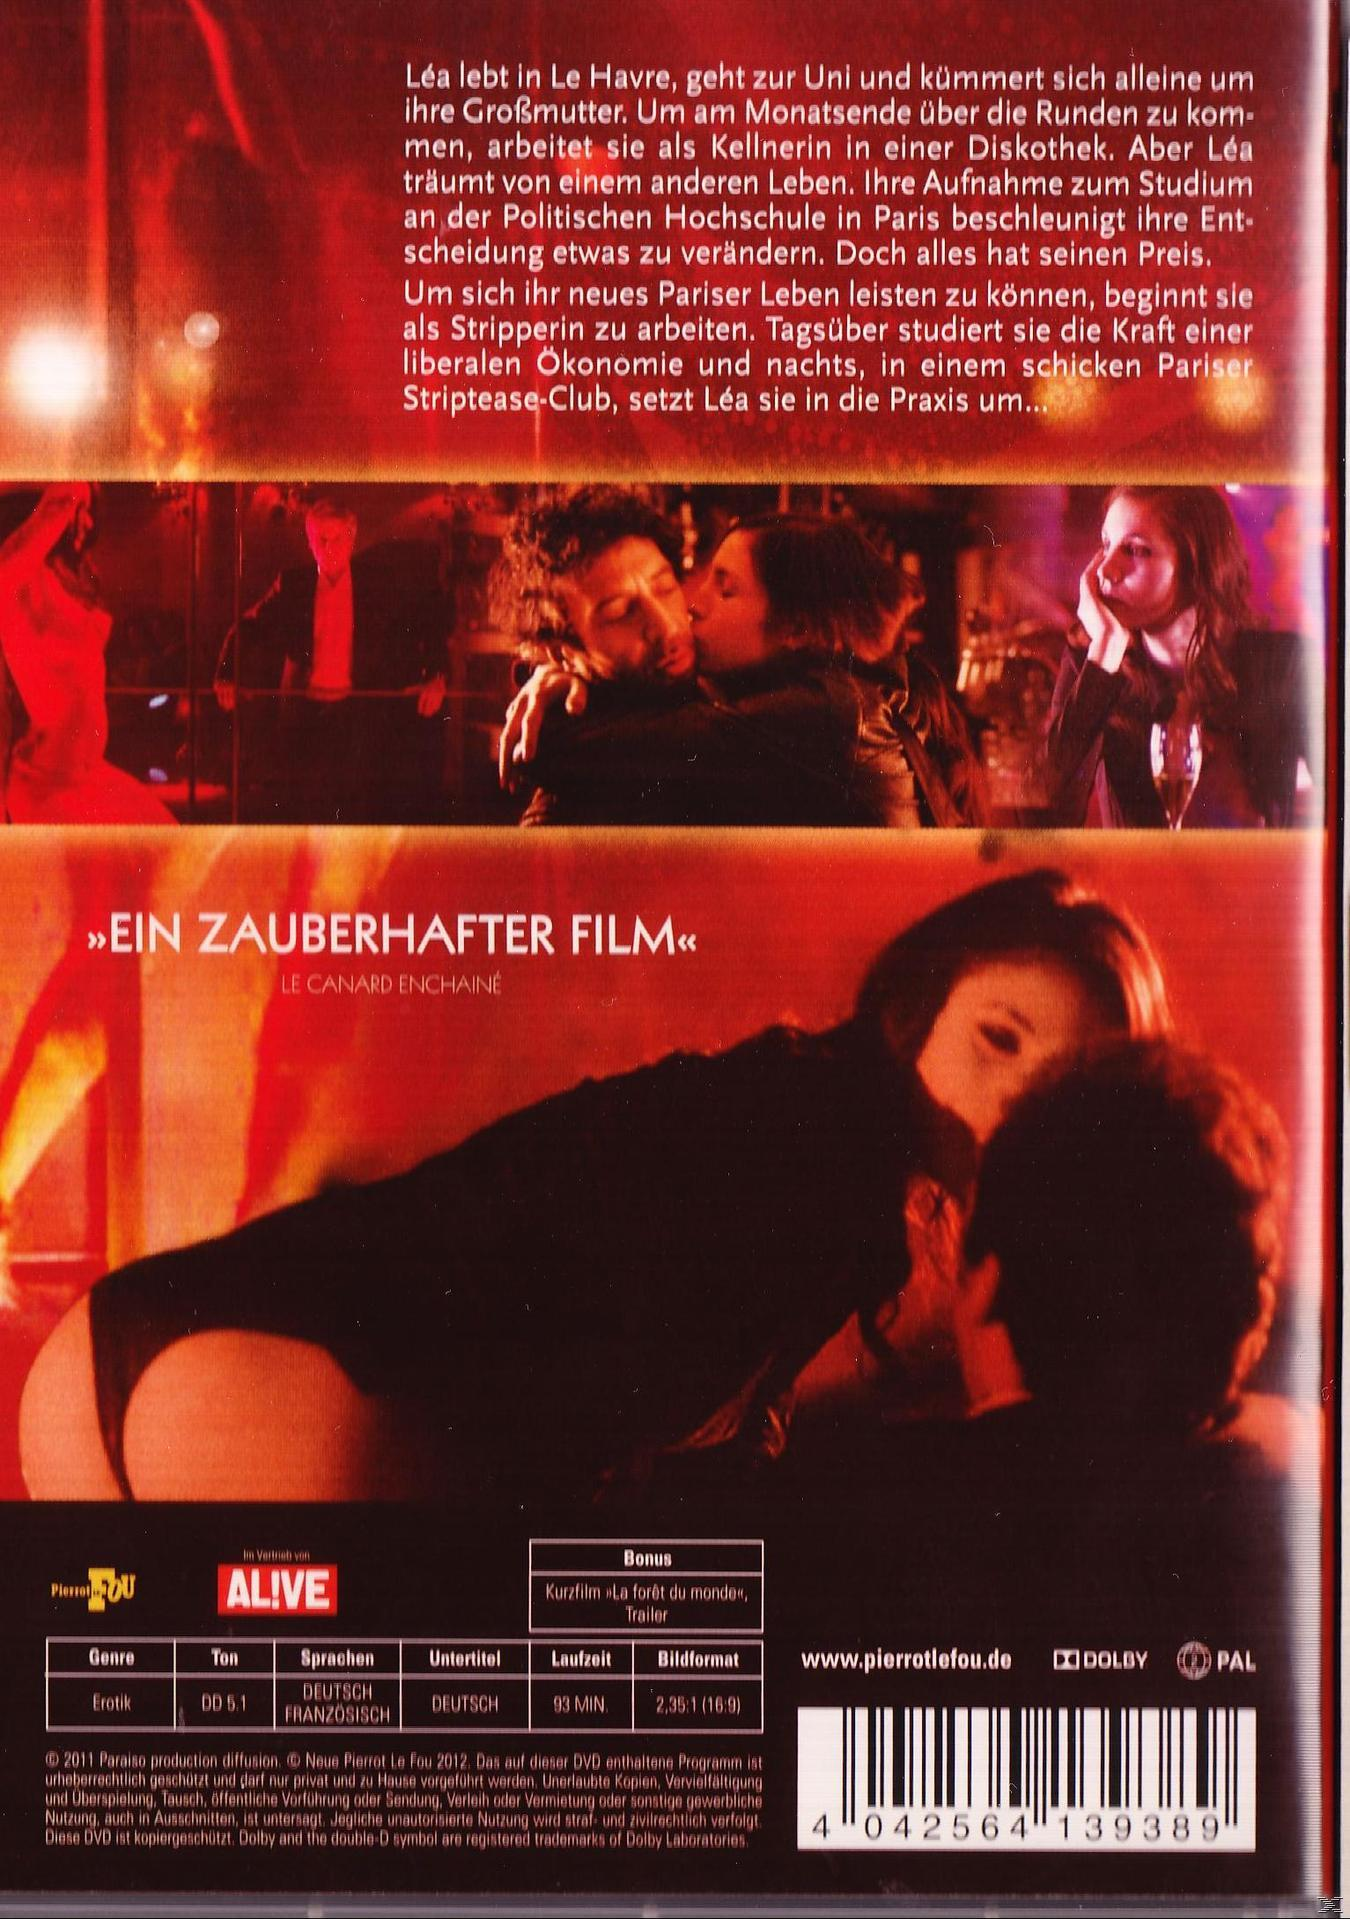 Lea - Die strippende DVD Studentin